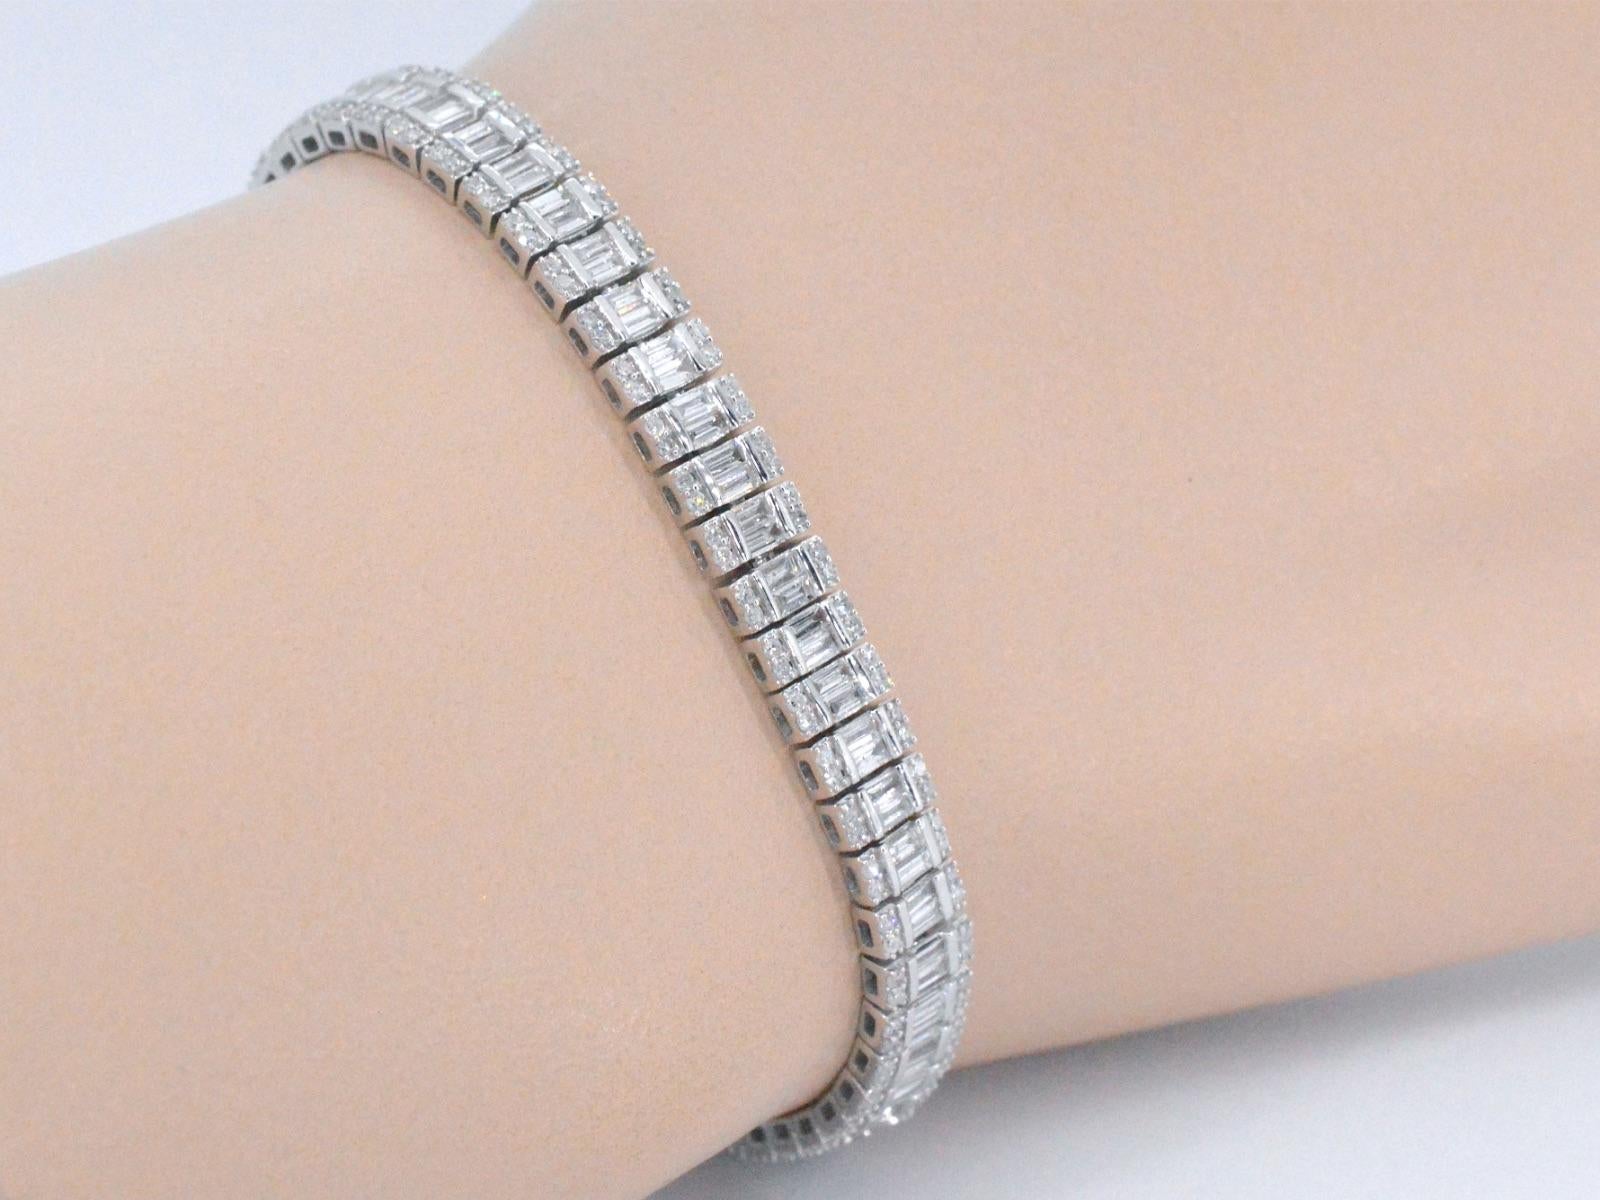 Ce bracelet en or blanc 14 carats est un superbe bijou entièrement serti de diamants, d'un poids total de 4,50 carats. L'or blanc est un métal de haute qualité connu pour sa solidité et sa durabilité, tandis que les diamants sont soigneusement